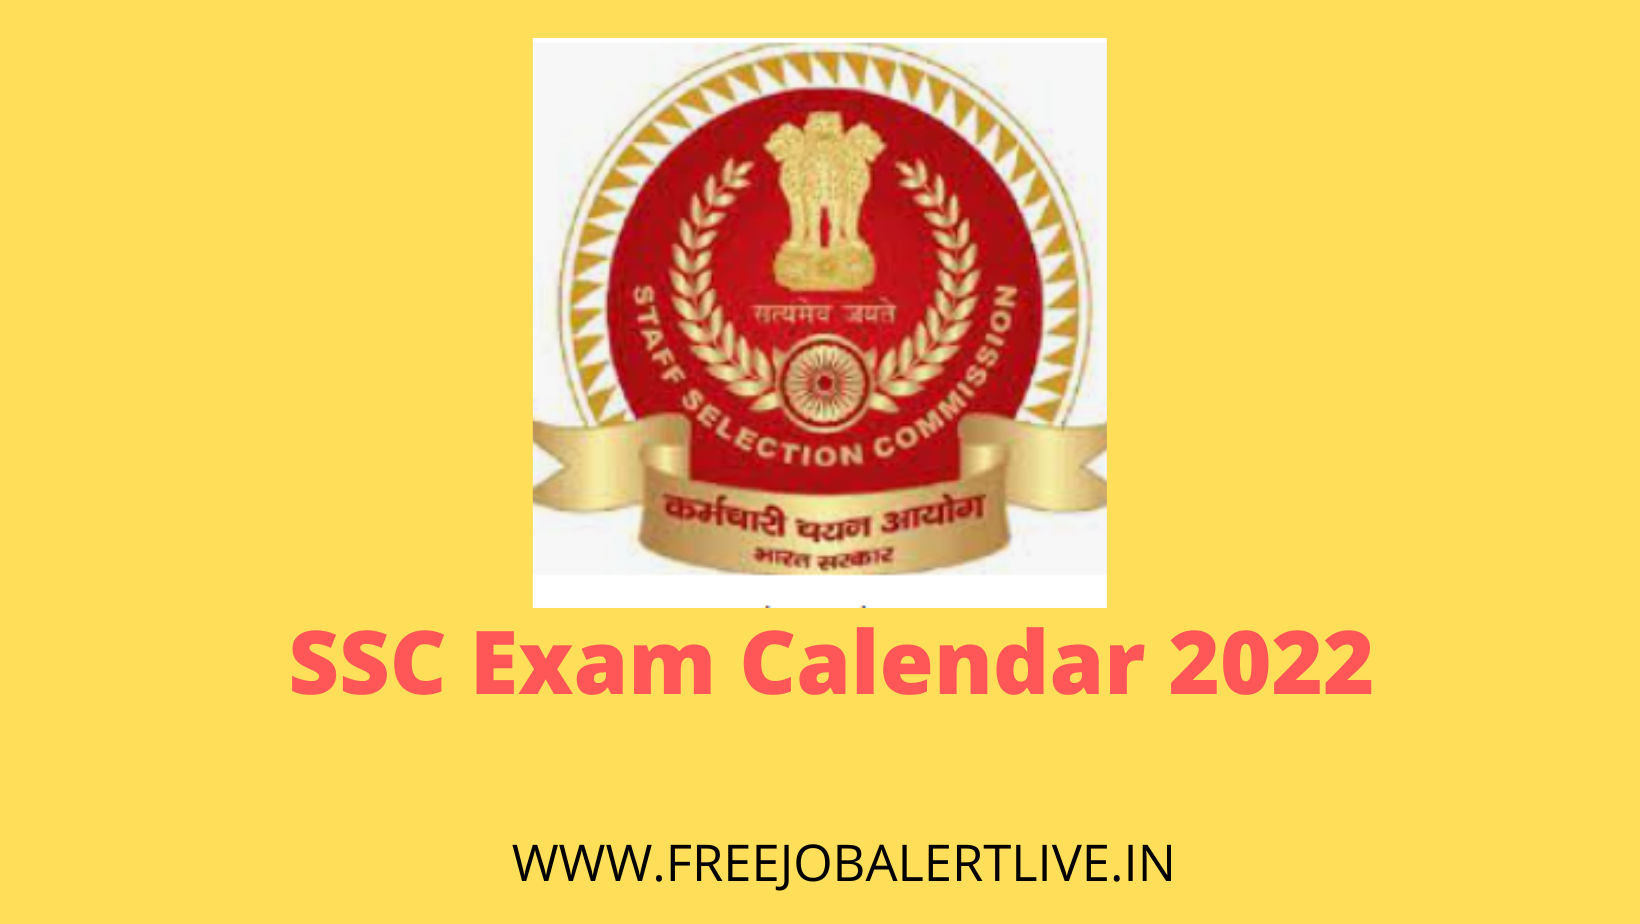 SSC Exam Calendar 2022